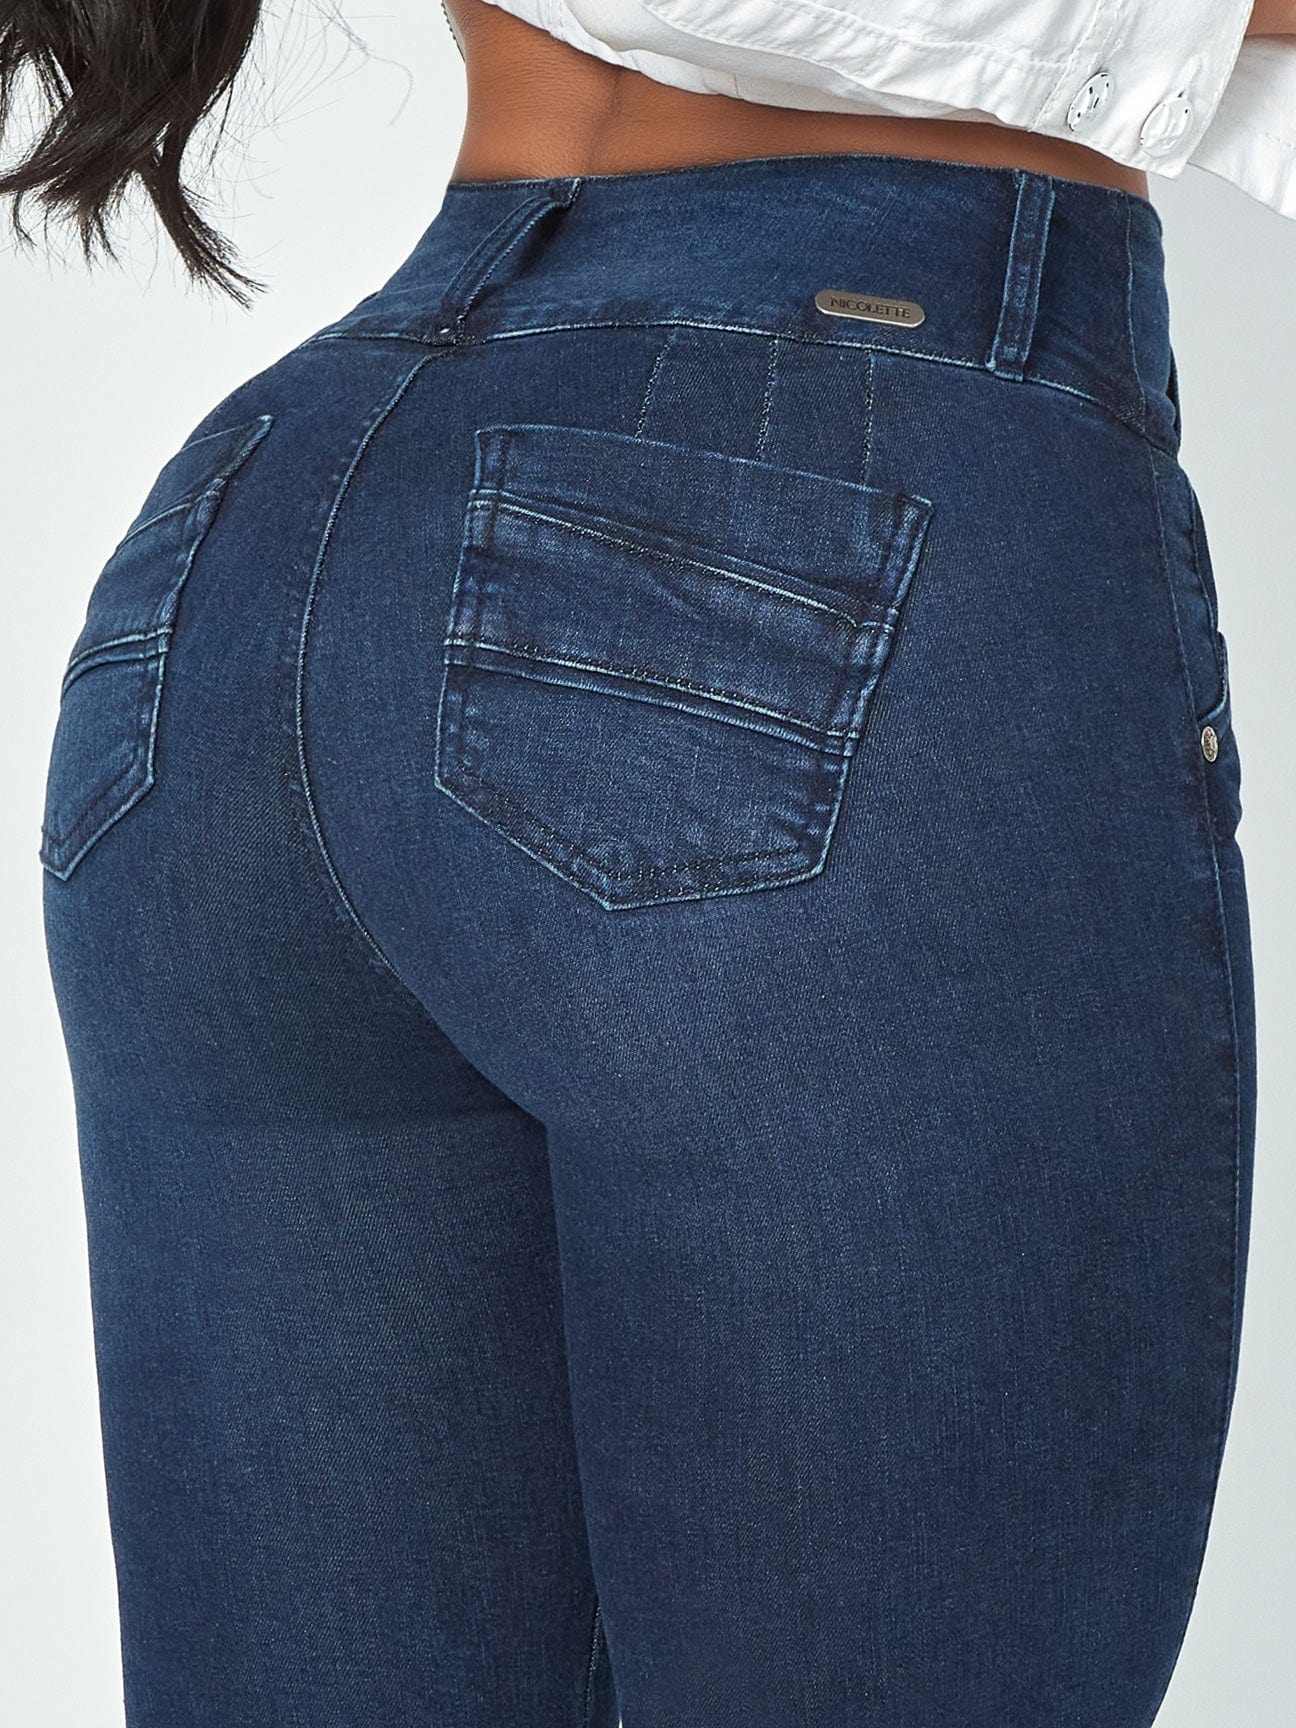 Maya Butt Lift Dark Blue Skinny Jeans waist back view.